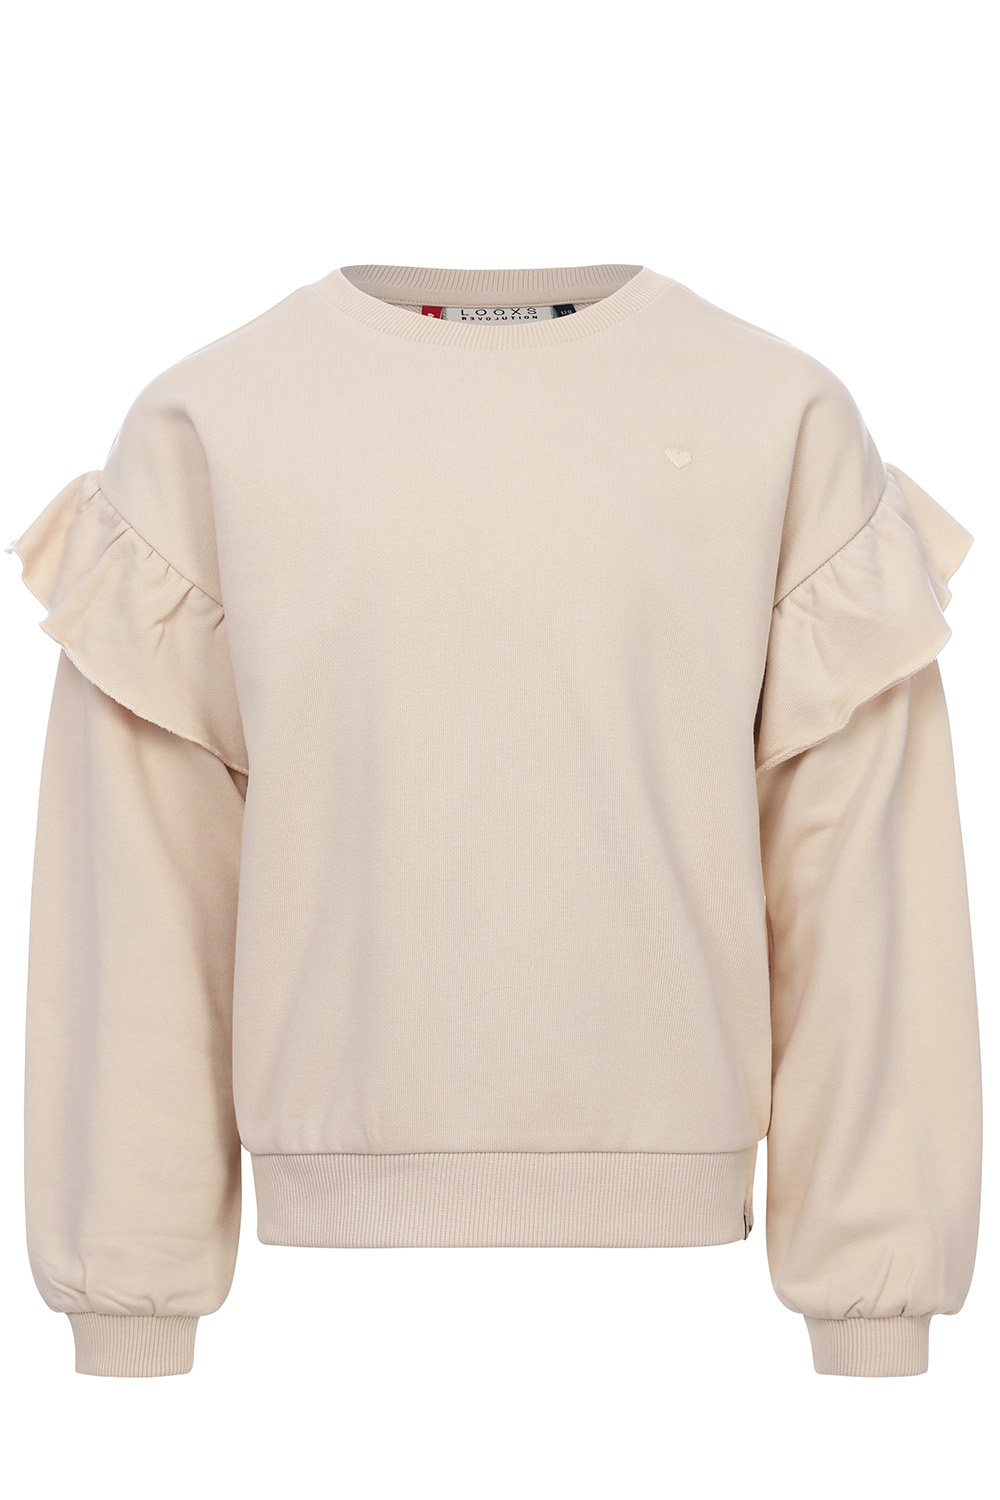 LOOXS Little 2401-7313-037 Meisjes Sweater/Vest - Maat 110 - ecru van 87% Cotton 13% Polyester